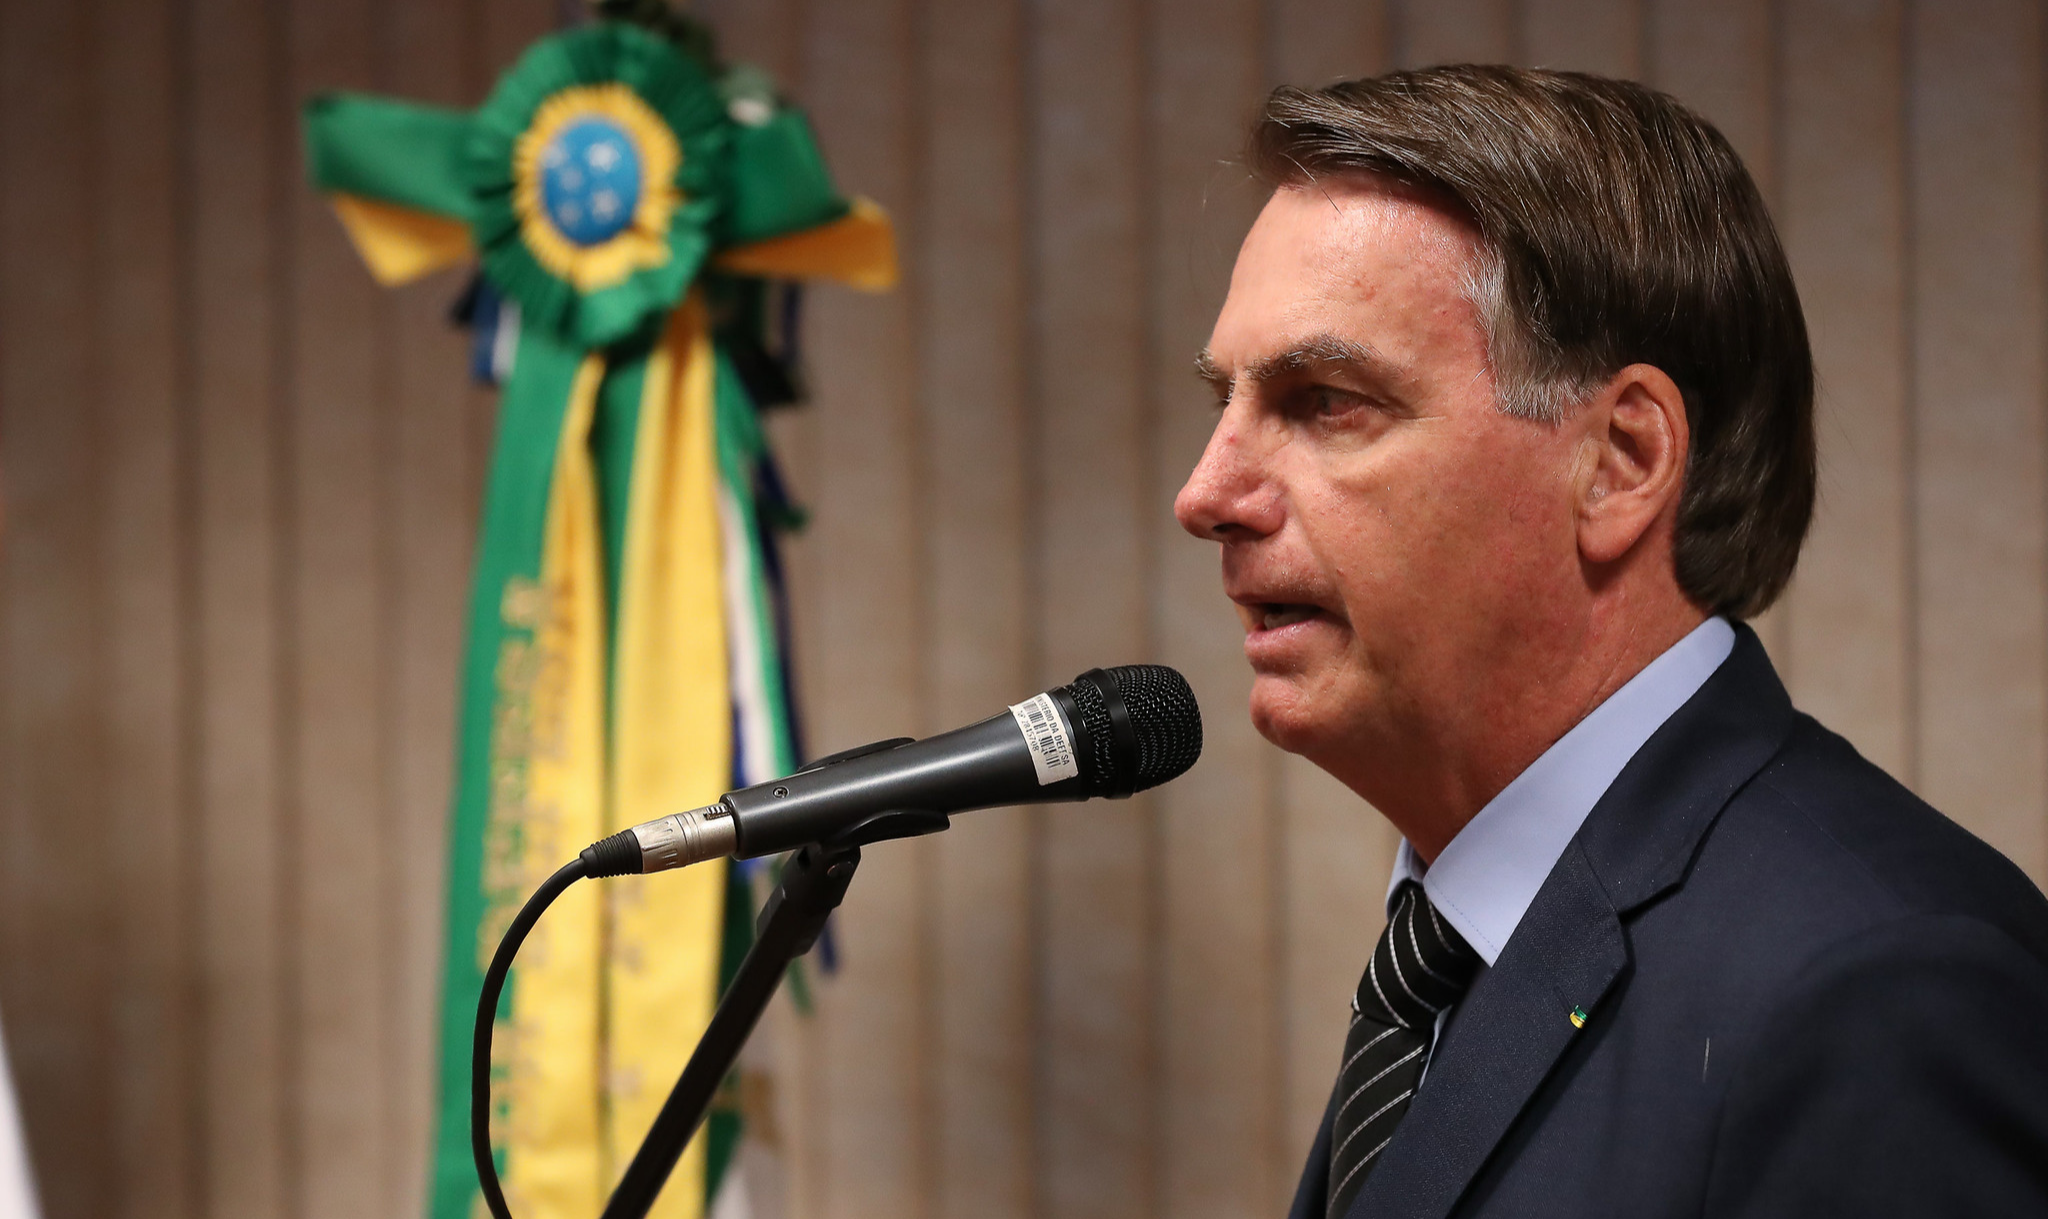 Jogada de Bolsonaro tem que ser entendida à luz das acomodações dentro da coalizão golpista - aquela que arquitetou a derrubada de Dilma e a criminalização da esquerda